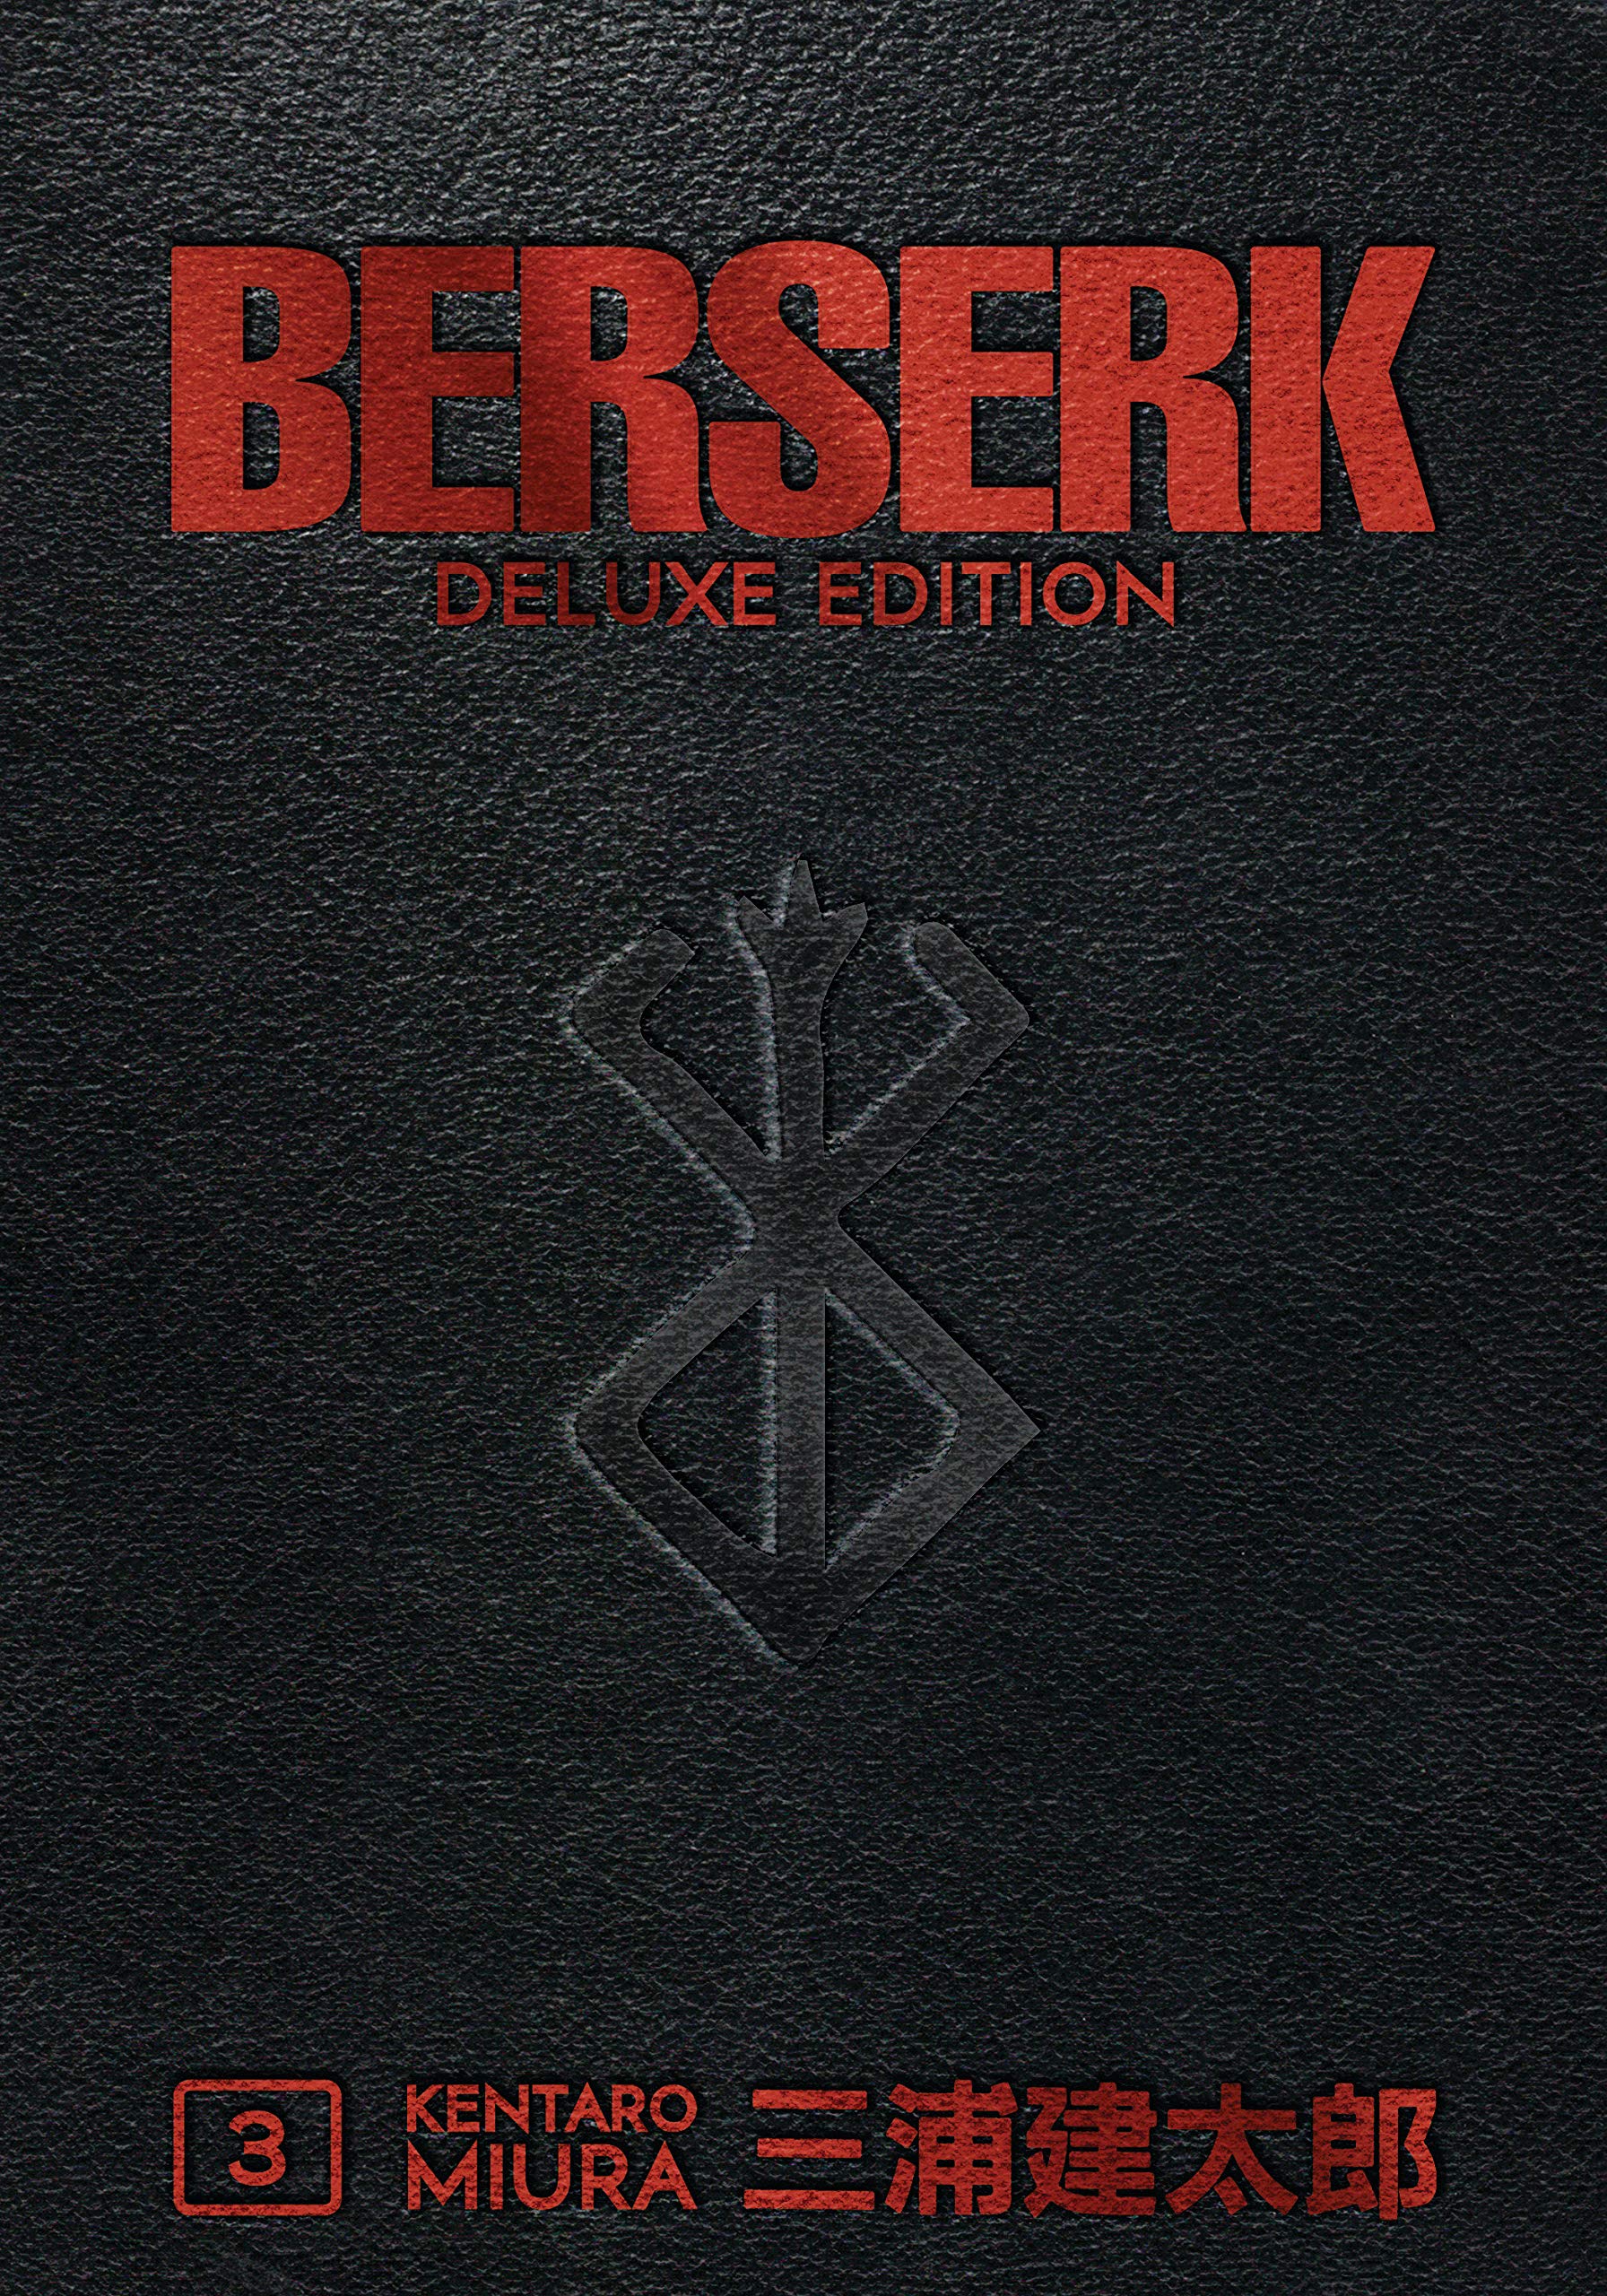 Berserk Beats Demon Slayer and Jujutsu Kaisen at Amazon Bestsellers!